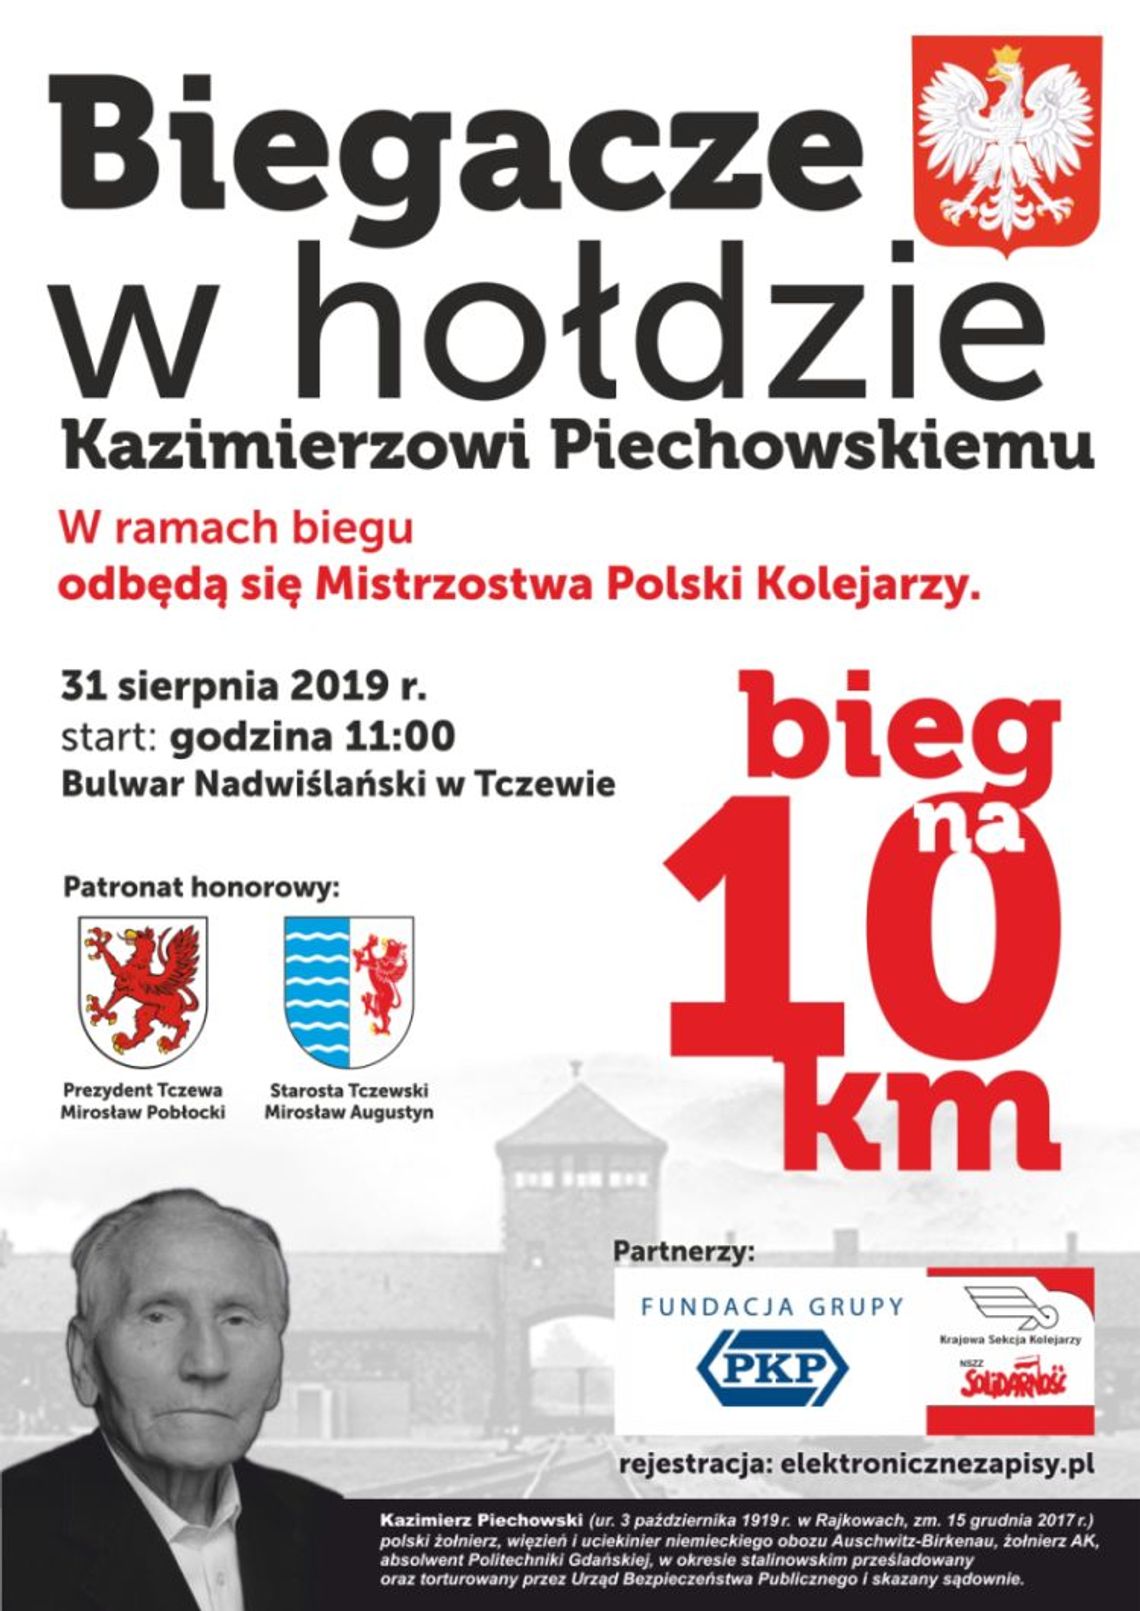 Biegacze w hołdzie Kazimierzowi Piechowskiemu